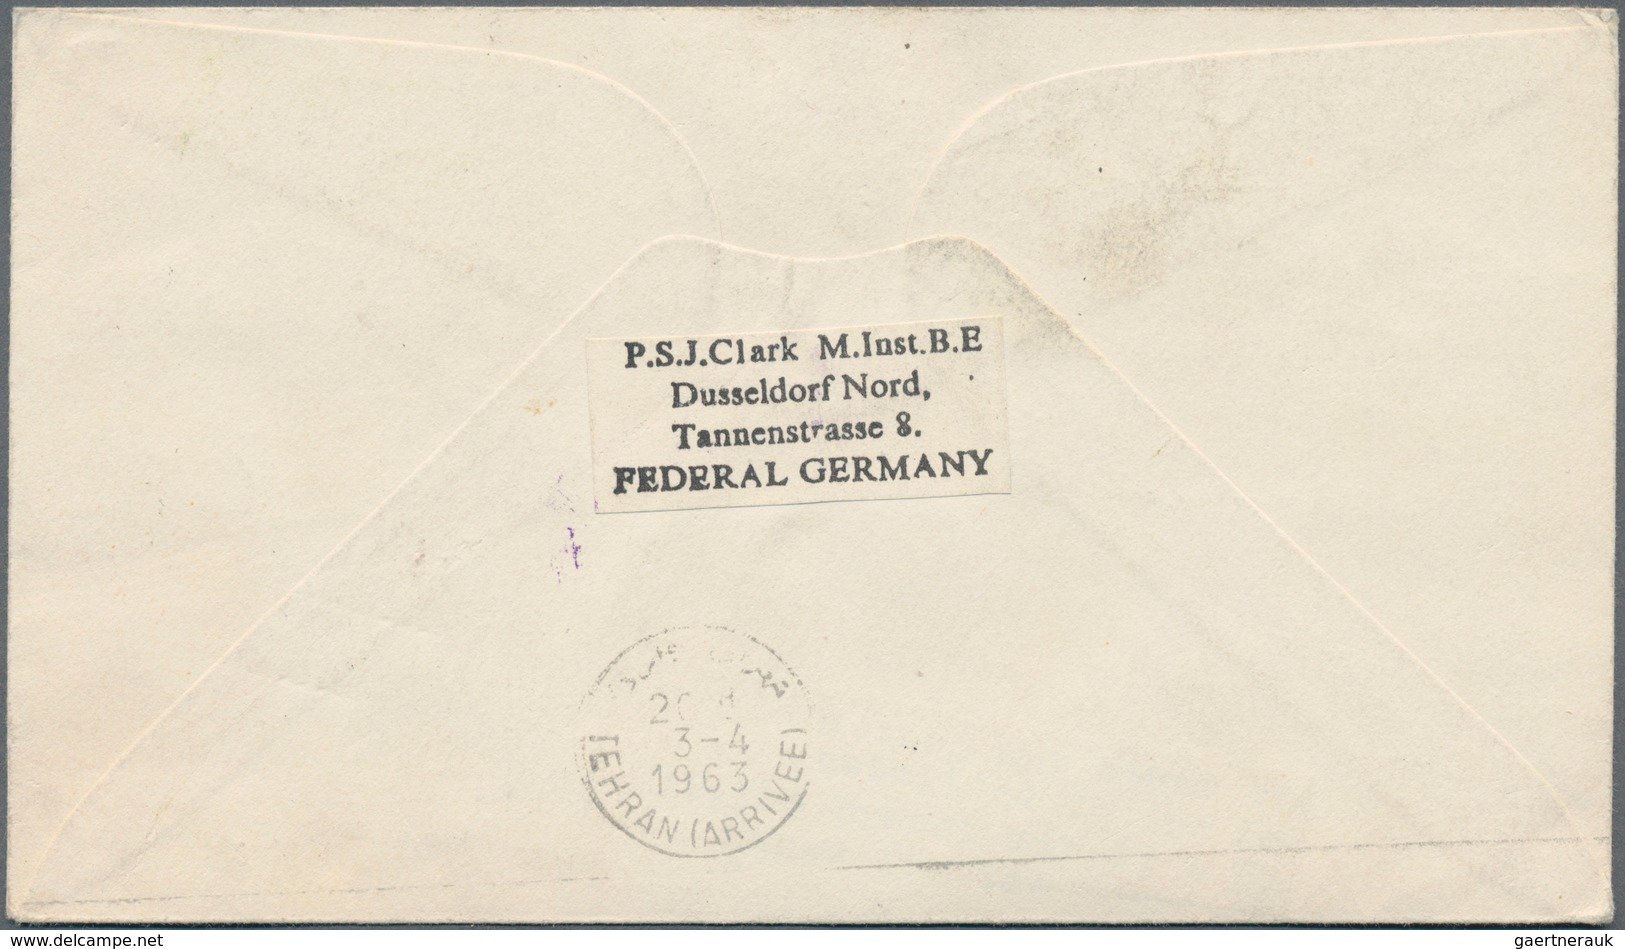 Österreich - Besonderheiten: 1962/1966, 5 Luftpost-Briefe aus Jungholz (Zolllanschlußgebiet) mit Ste